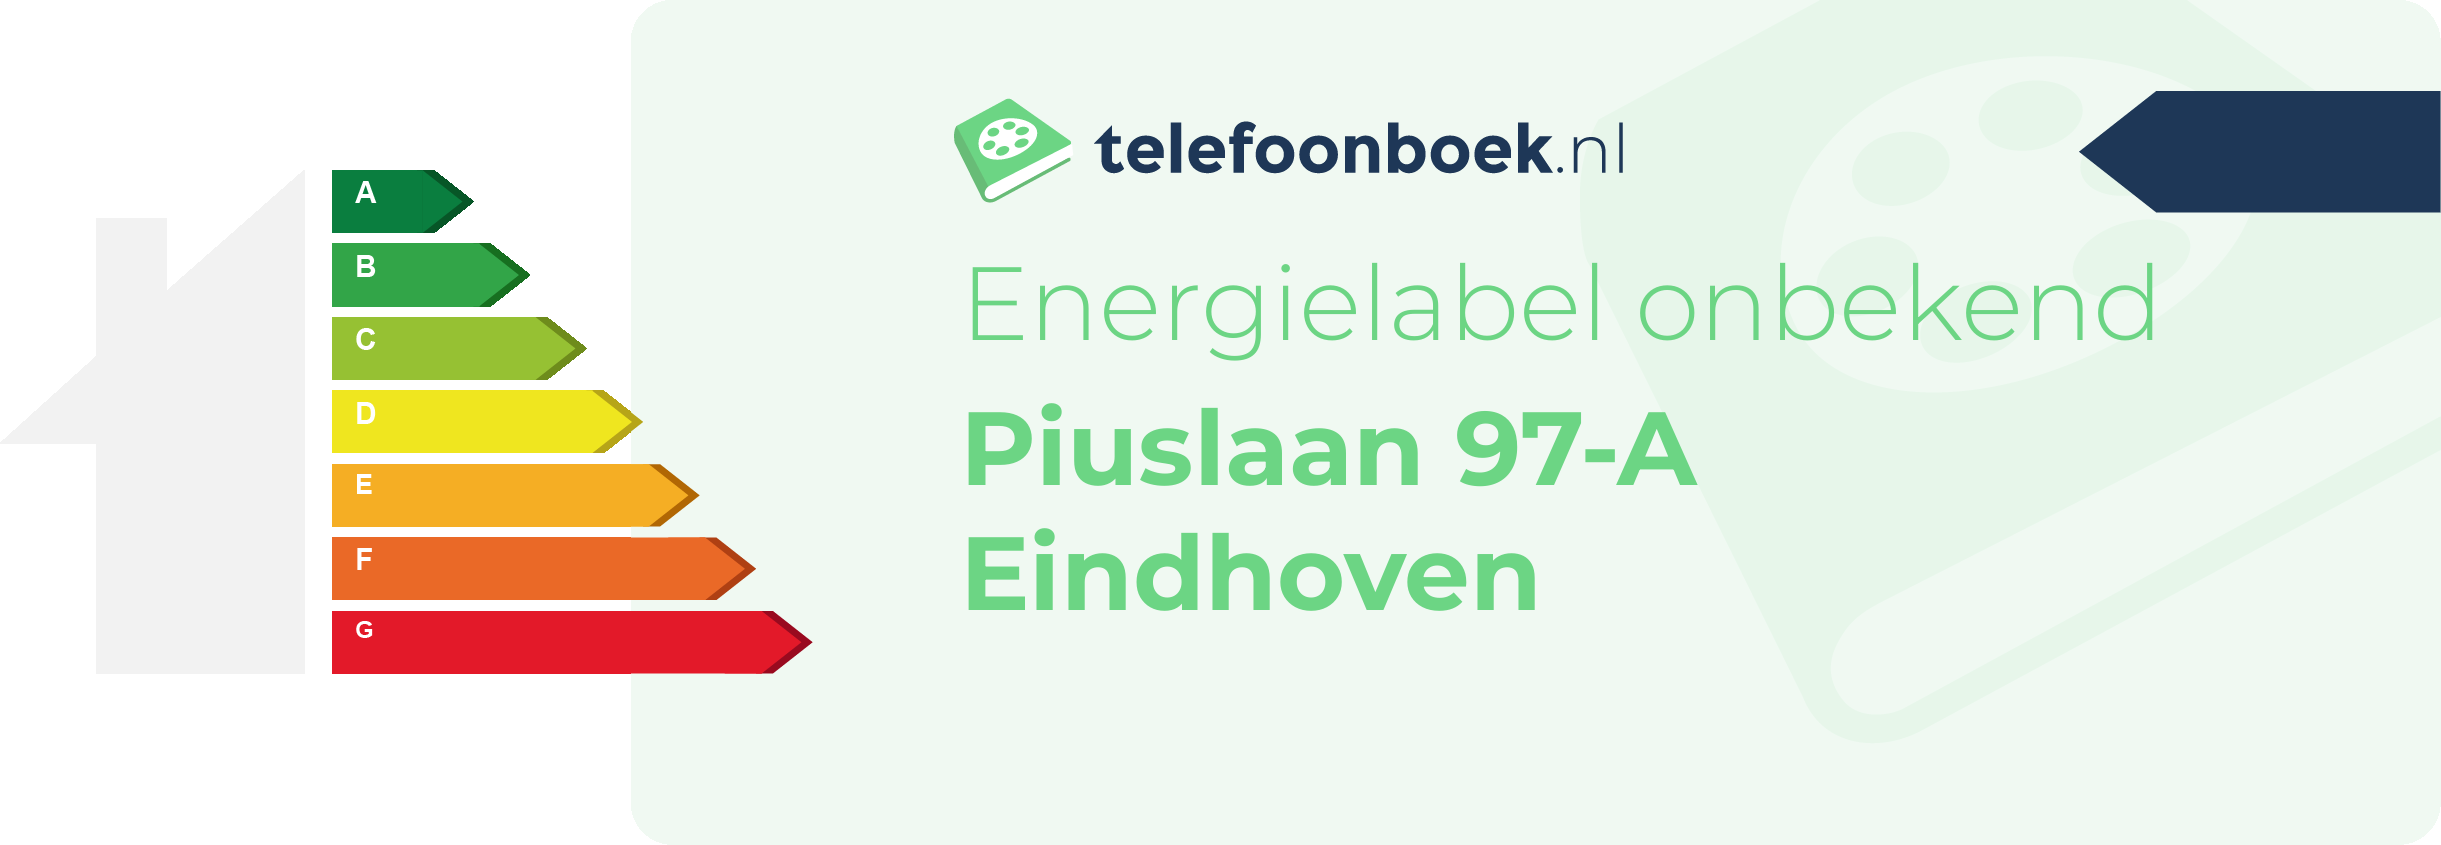 Energielabel Piuslaan 97-A Eindhoven